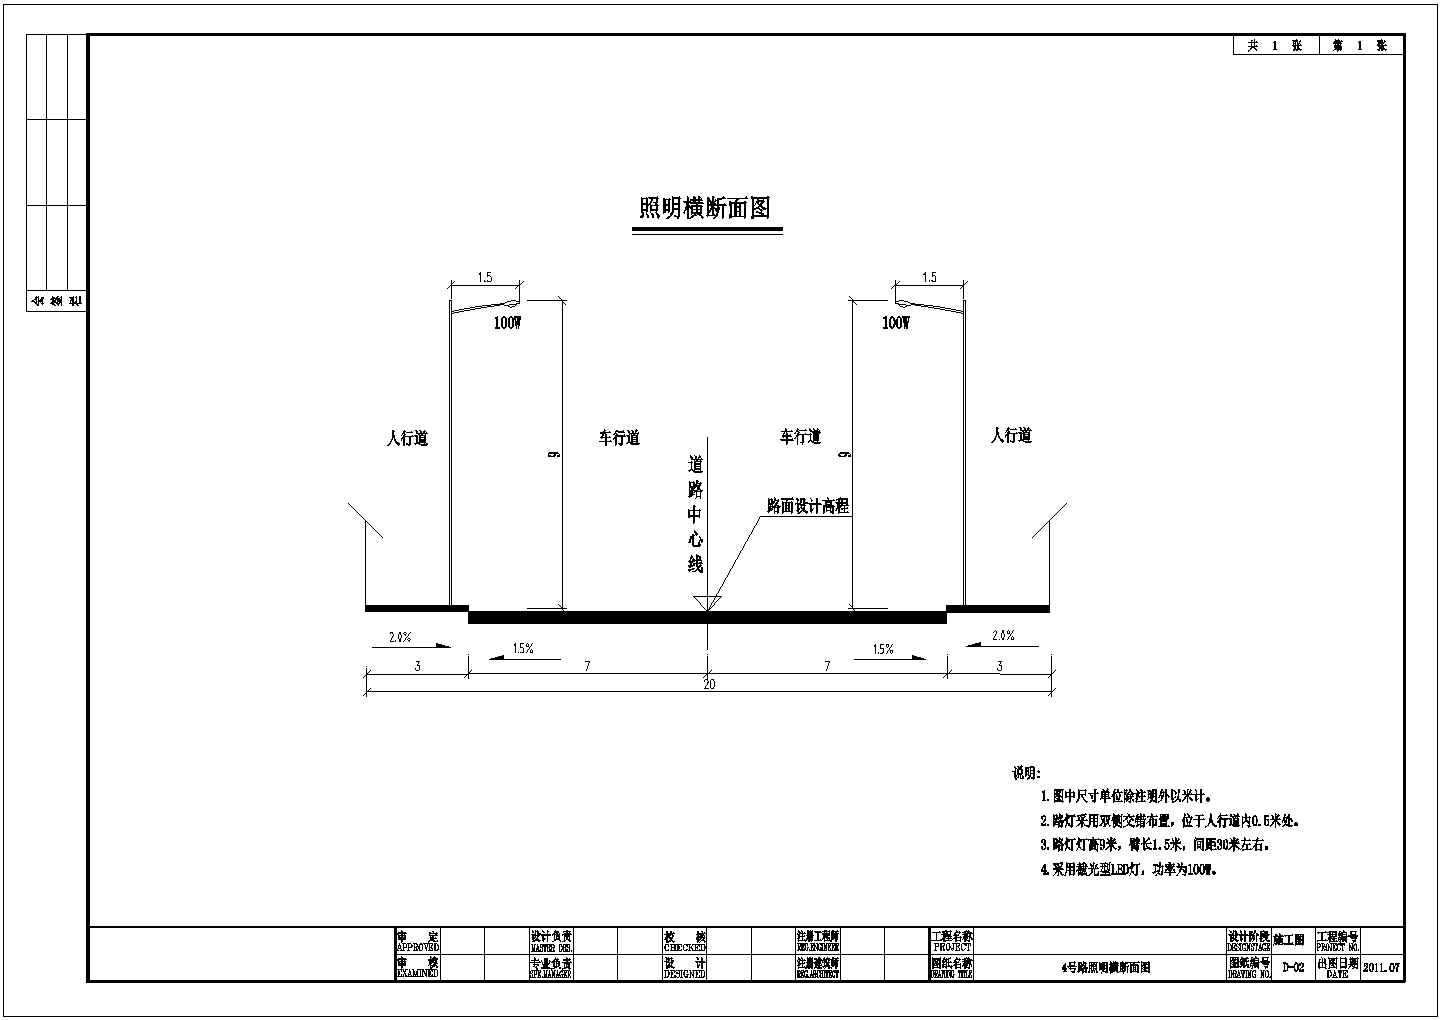 【四川】道路及其配套基础设施建设电施图